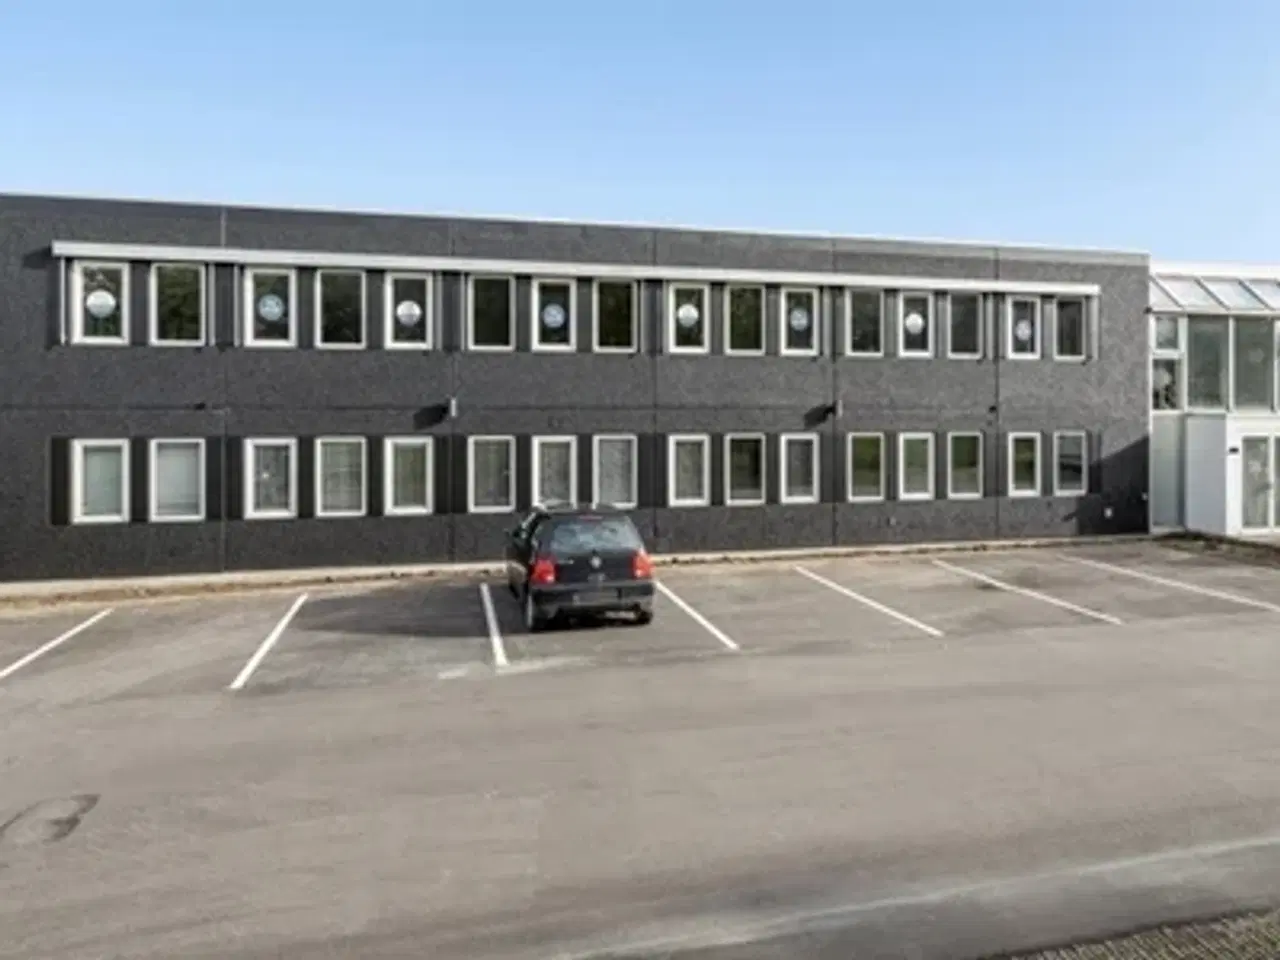 Billede 1 - Kontor til leje i 5220 Odense SØ